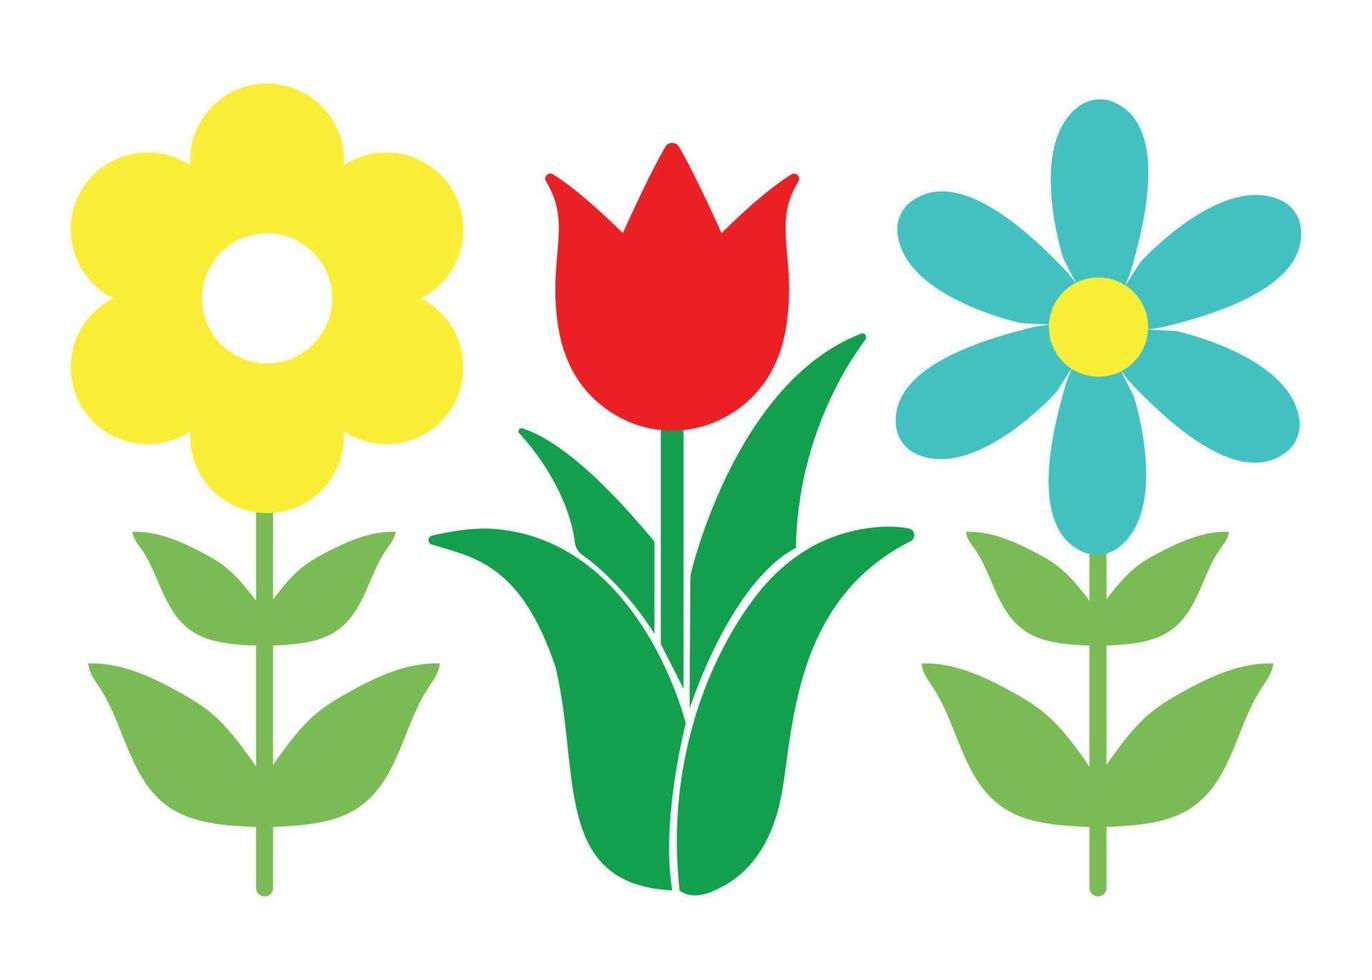 diseño de conjunto de flores simple estilo minimalista ilustración de forma básica floral vector